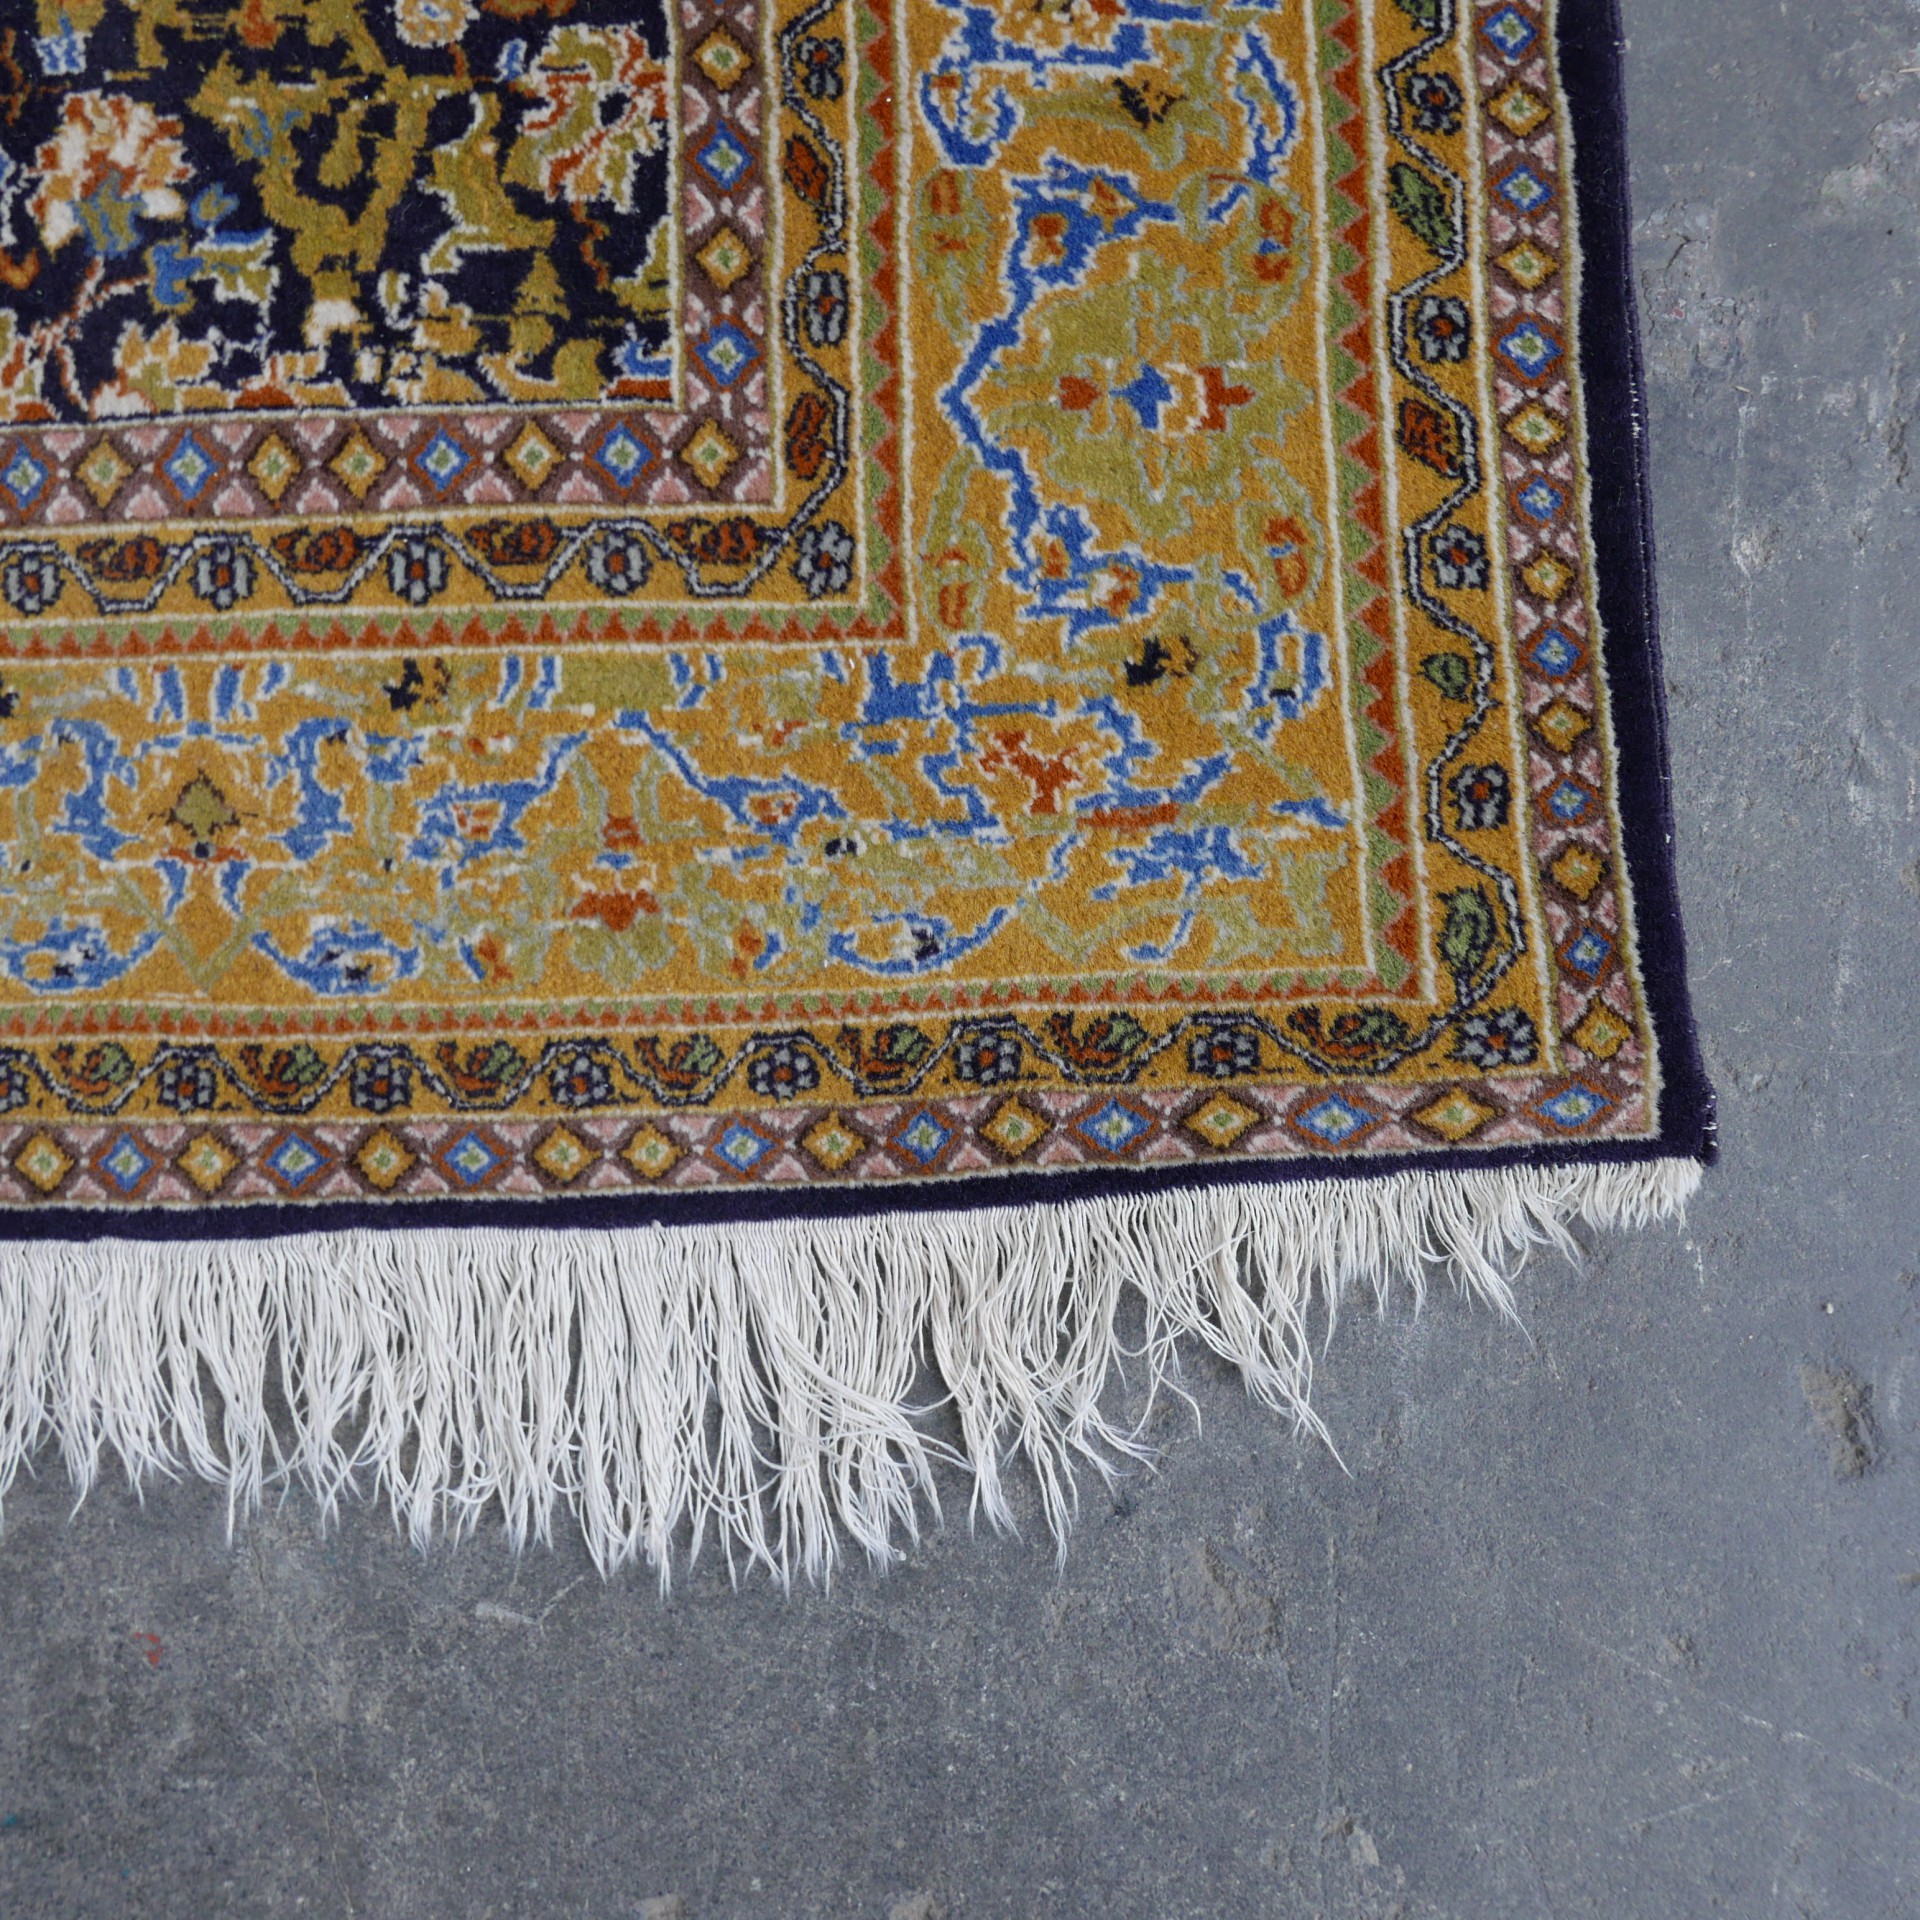 Oven platform Niet ingewikkeld Perzisch tapijt geel » Van Dijk & Ko